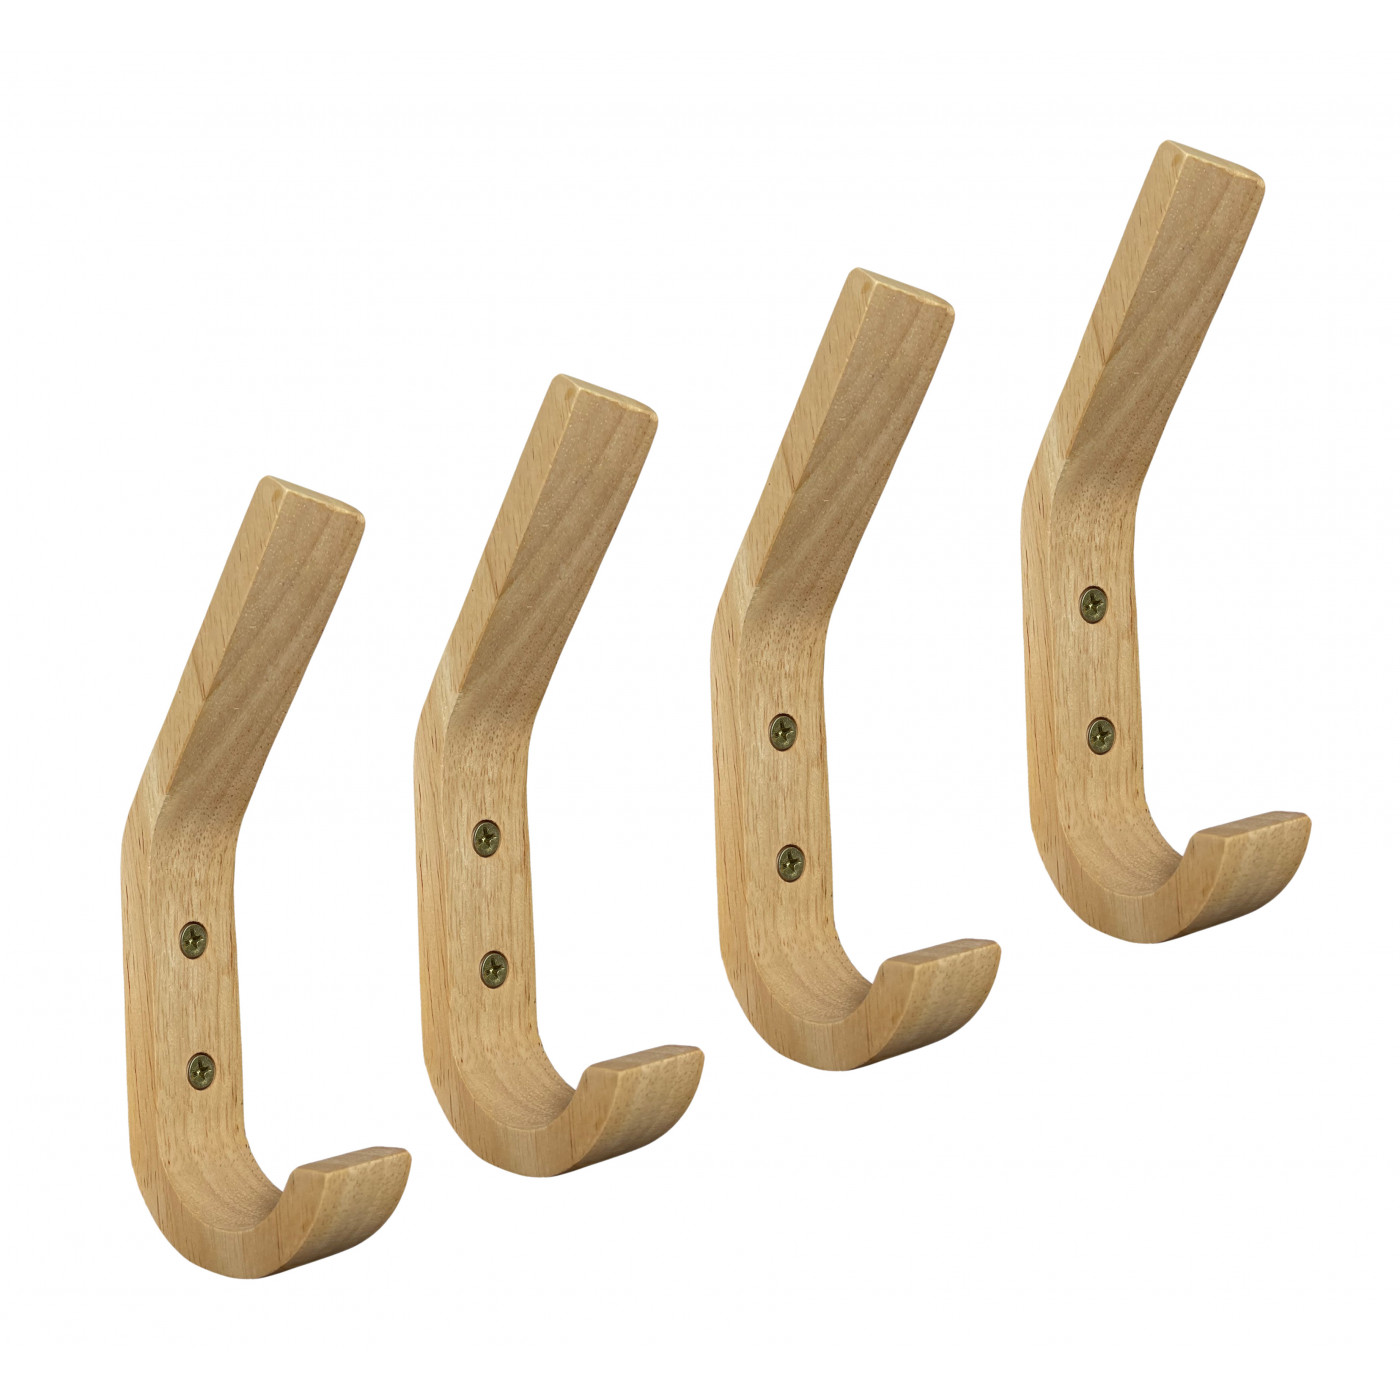 Loodgieter Springen Bachelor opleiding Set van 4 houten kapstokhaken (rubberwood) - Wood, Tools & Deco